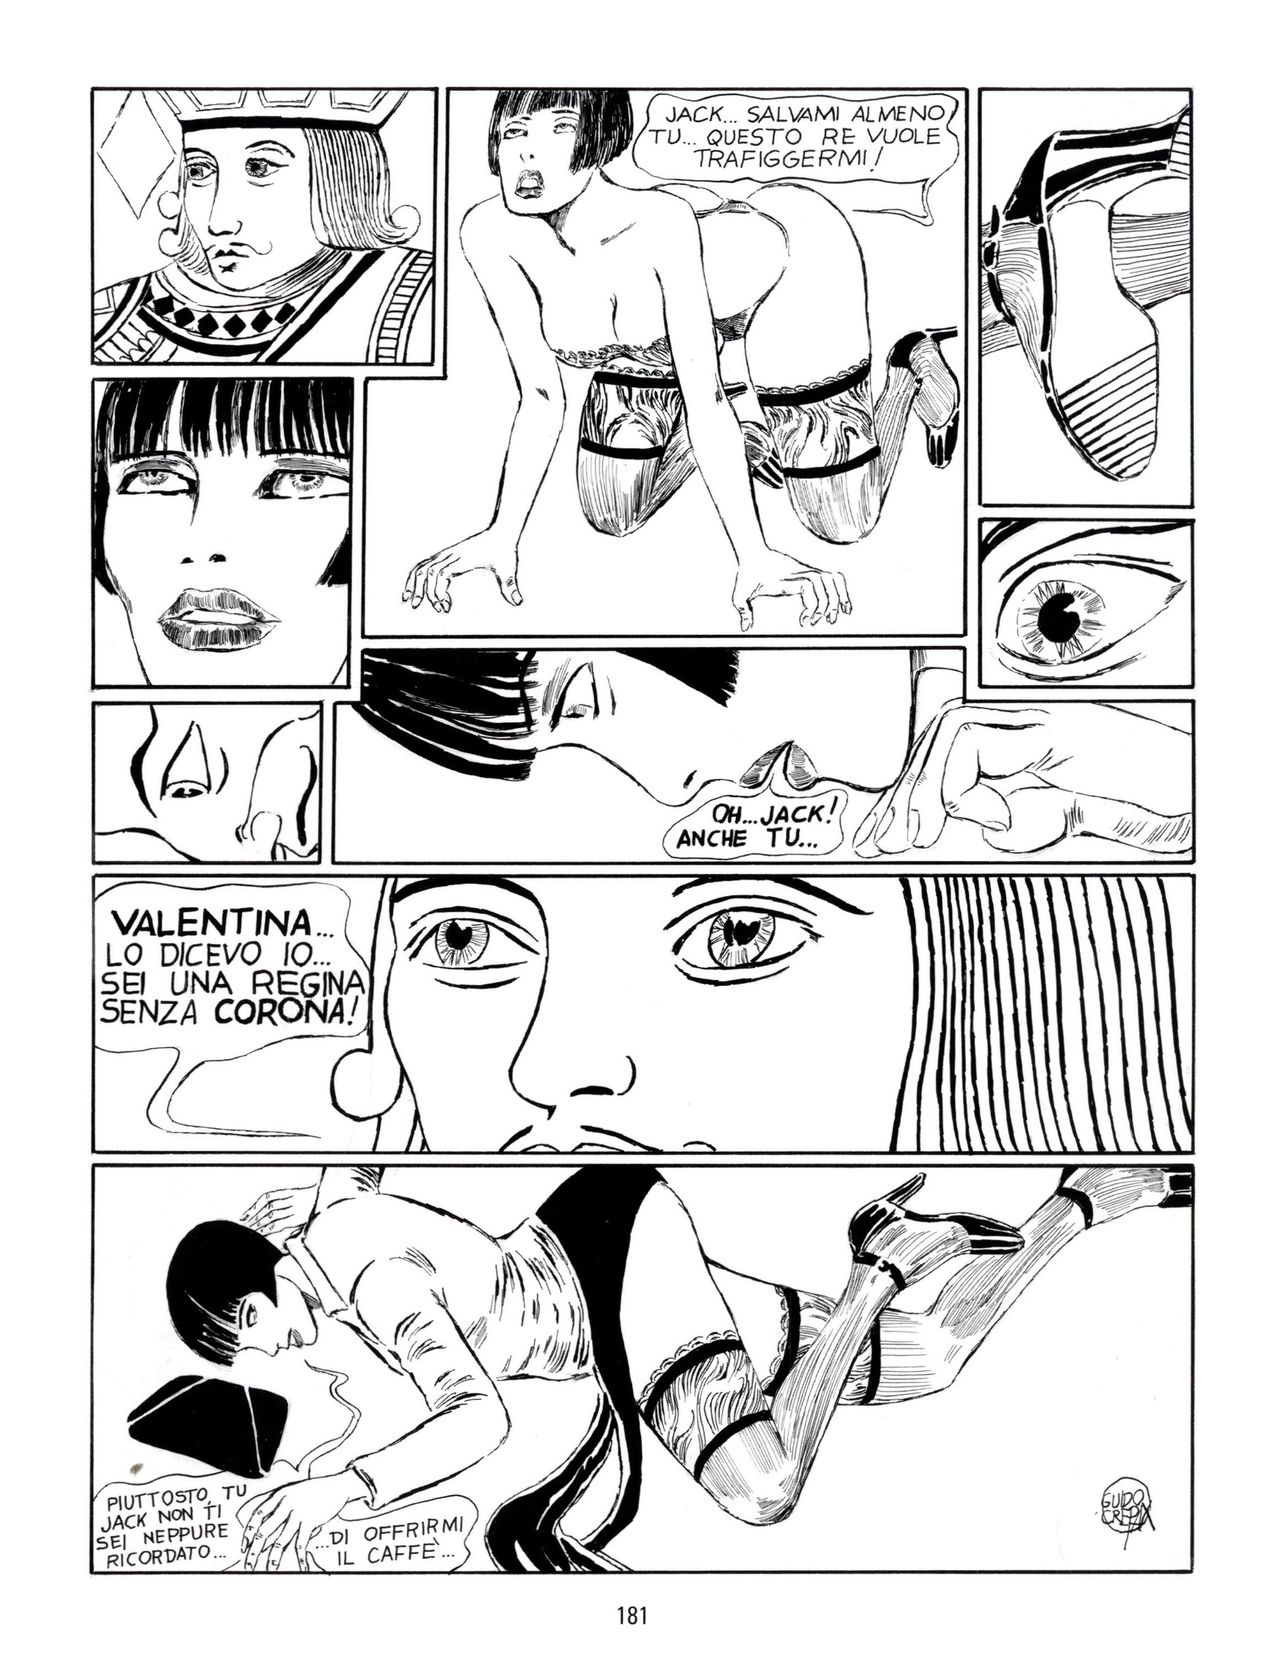 [Guido Crepax] Erotica Fumetti #29 : Arrivederci Valentina? : Verso una nuova vita [Italian] 184